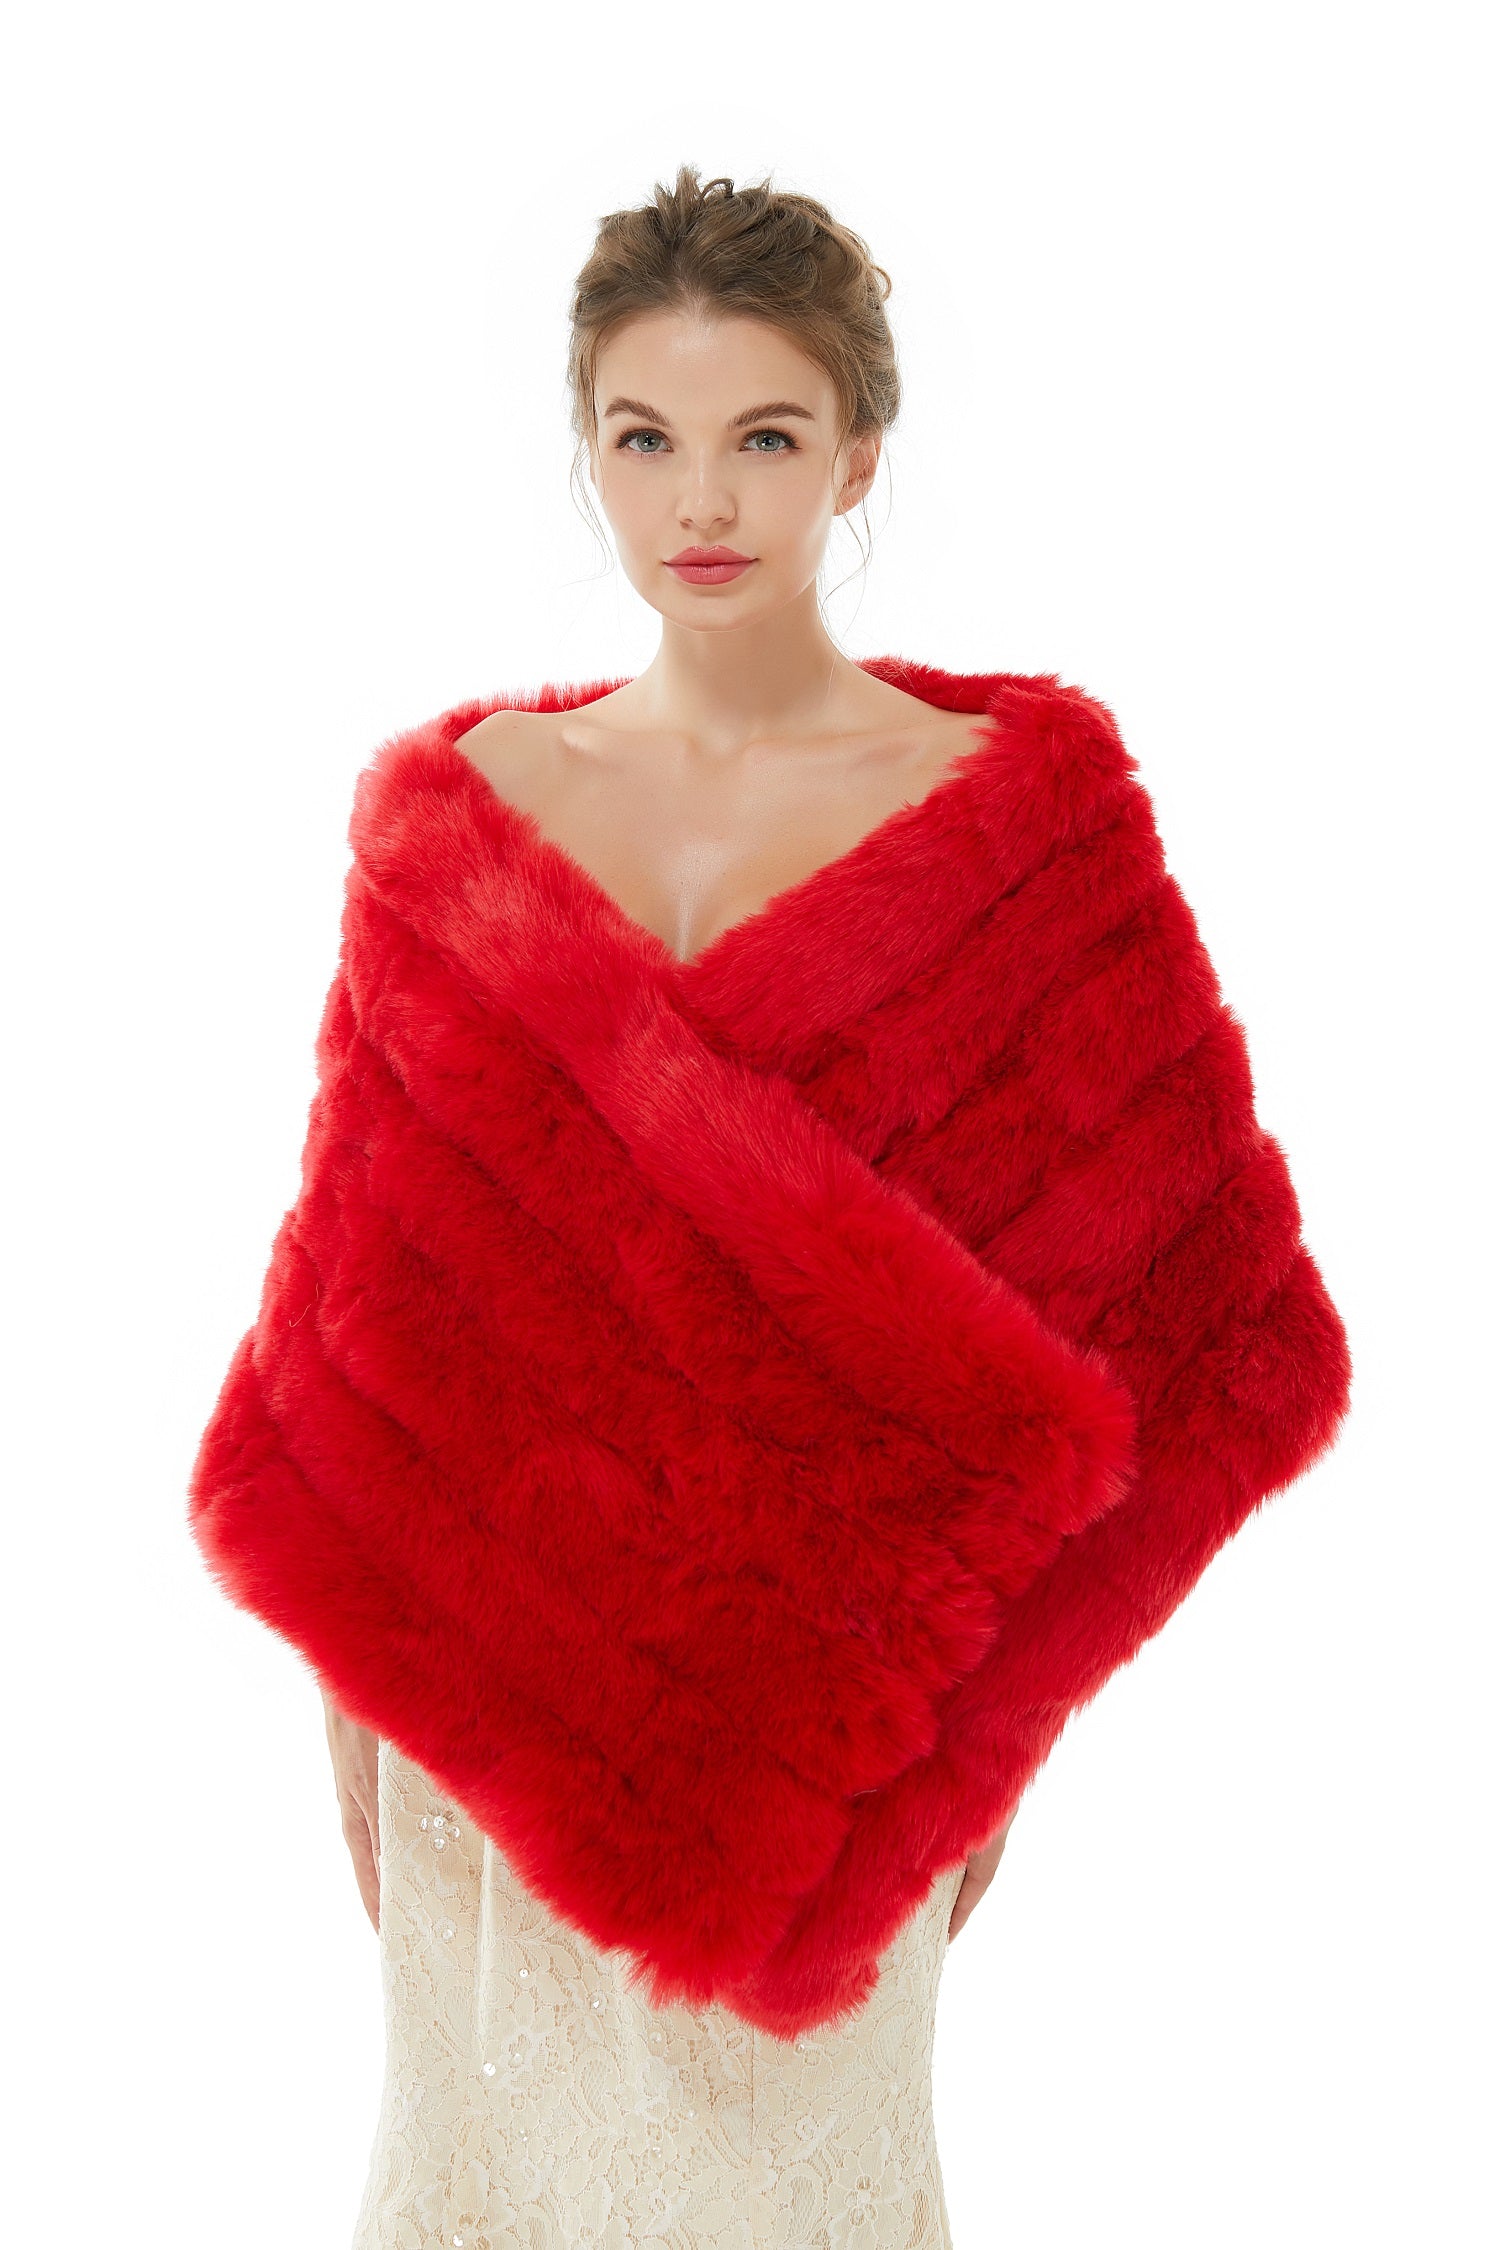 Warm Red Wedding Shawl Faux Fur Bridal Wrap Online - lulusllly